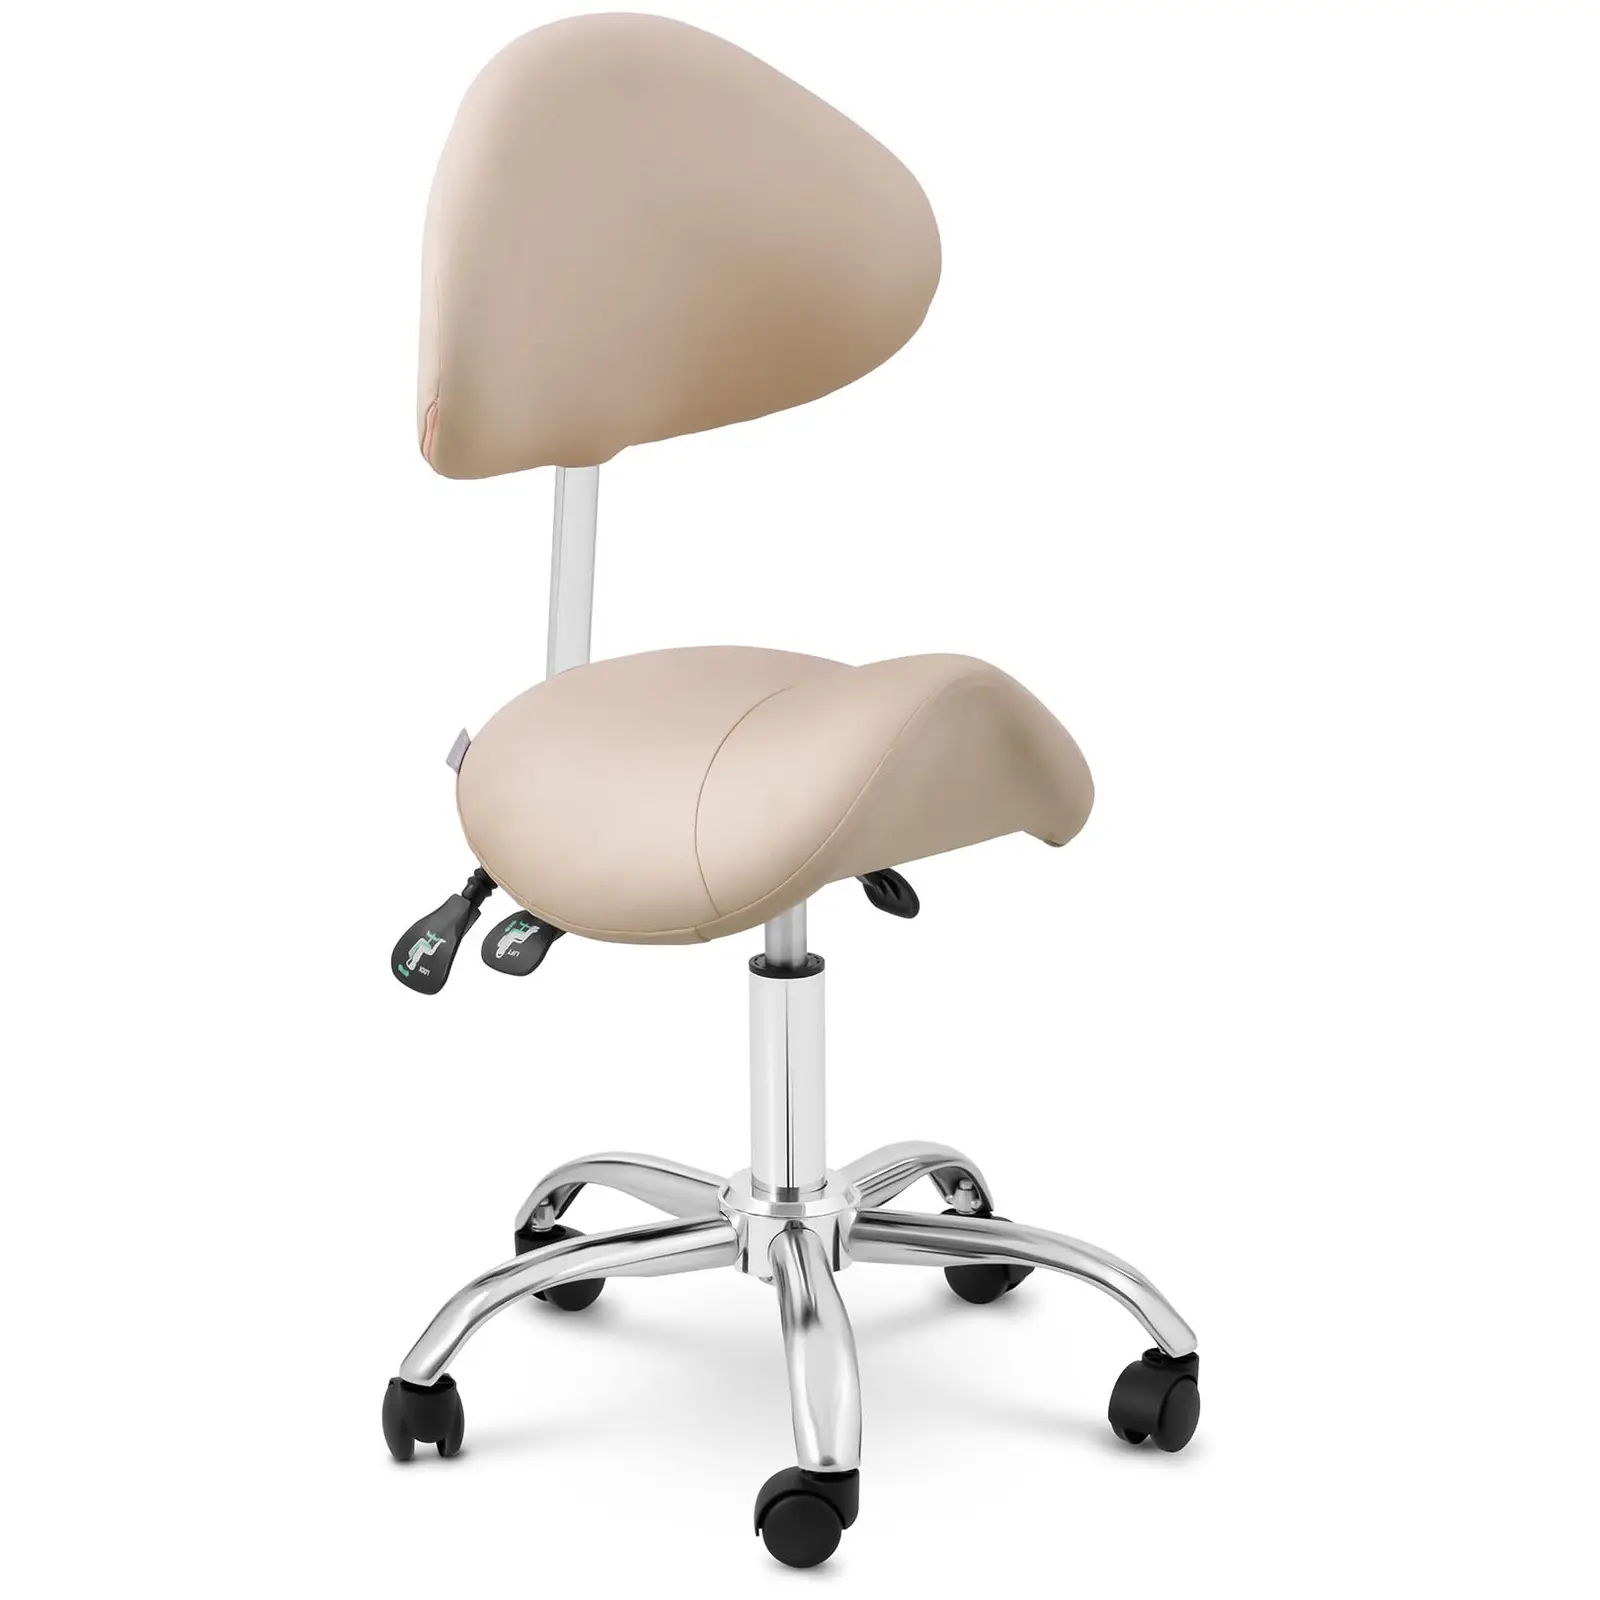 Krzesło siodłowe - oparcie i siedzisko z regulacją wysokości - 55-69 cm - 150 kg - Kremowy, Srebrny